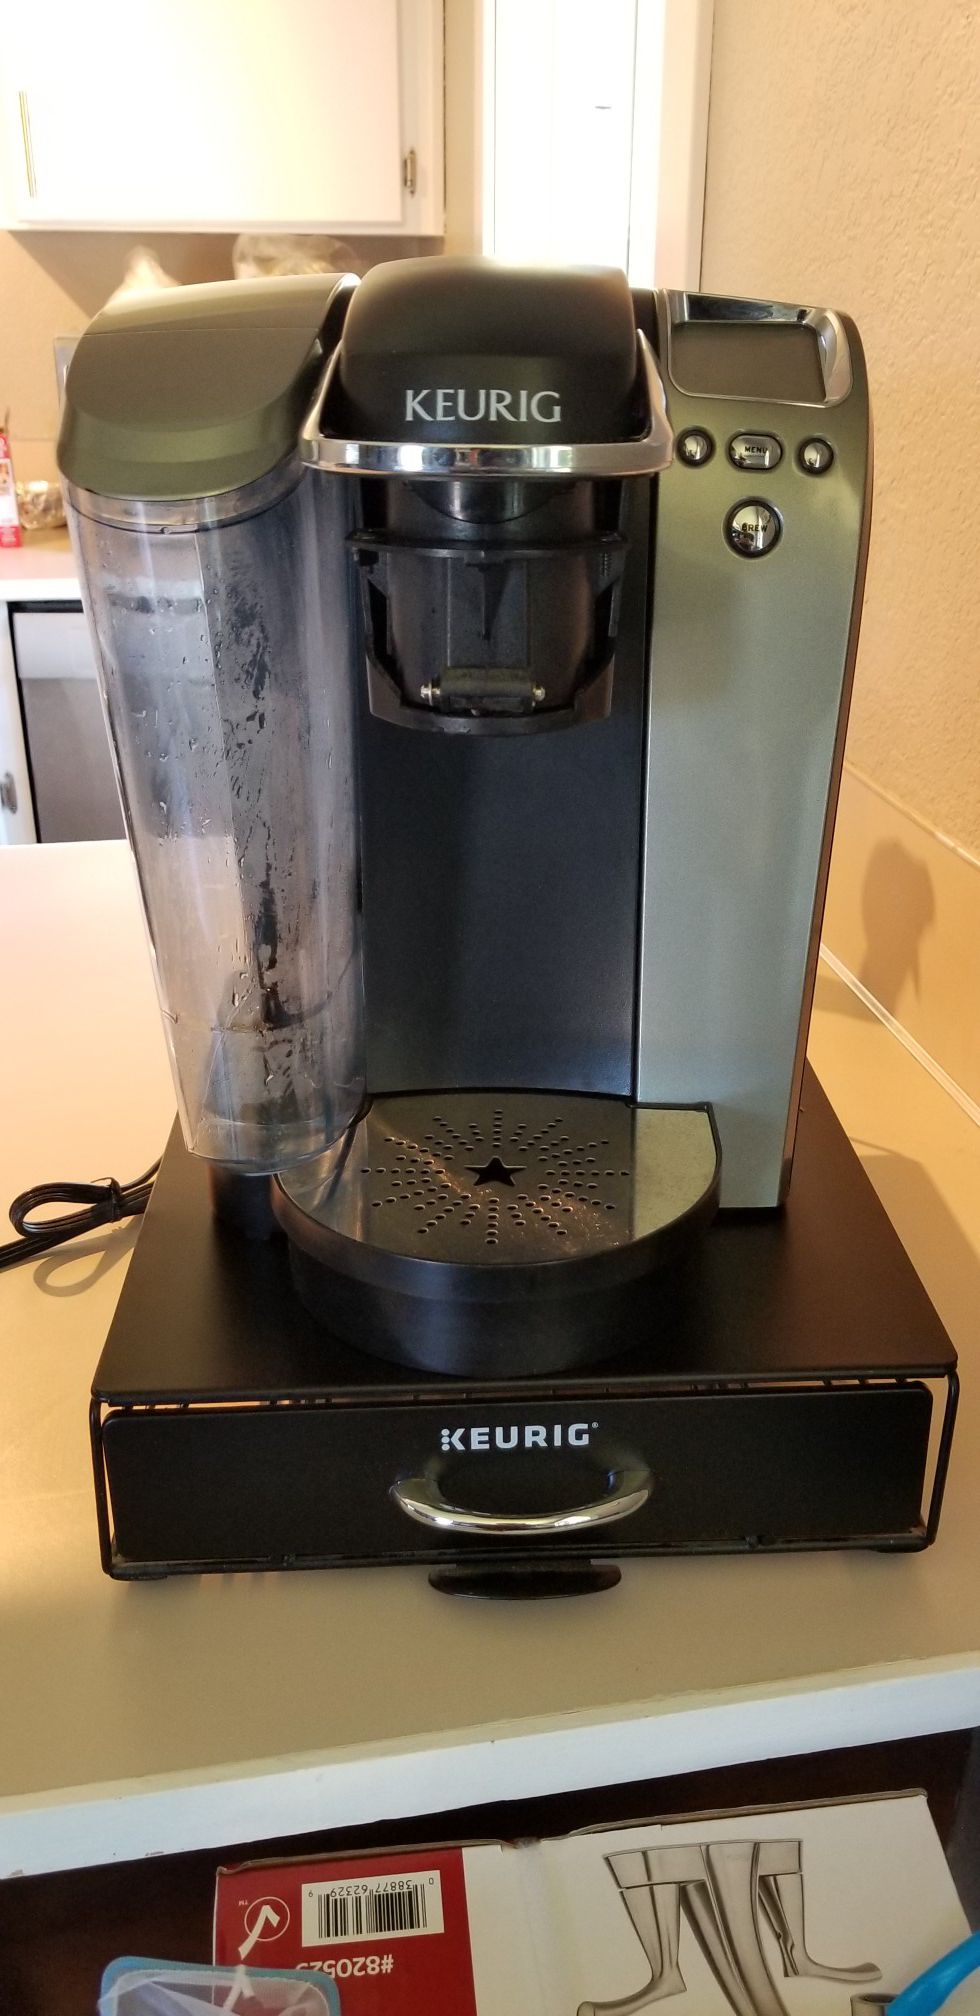 Keurig coffee maker w/ holder